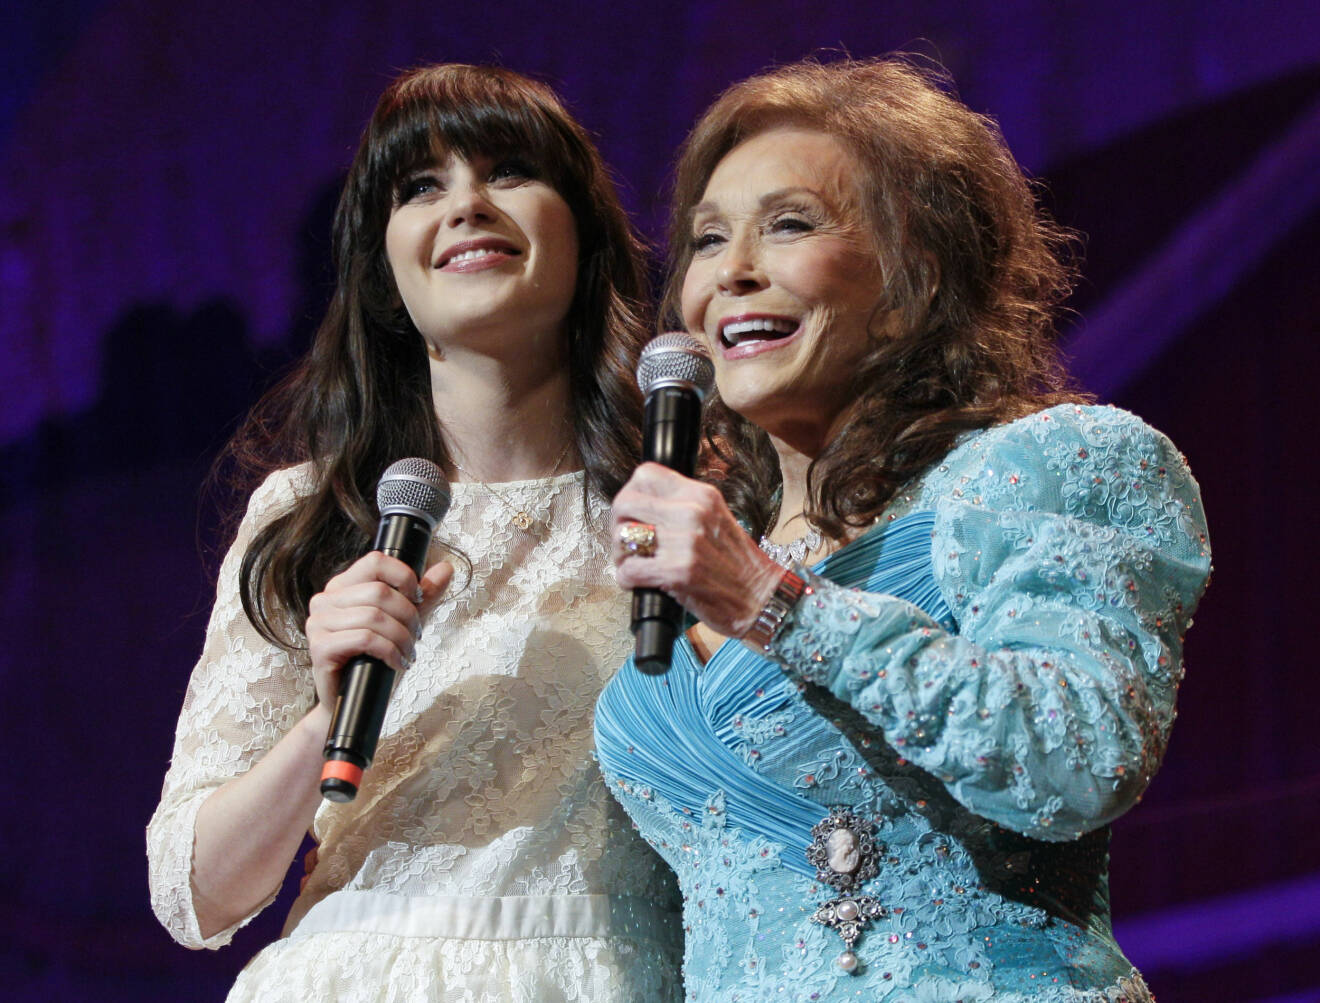 Skådespelerskan Zooey Deschanel och Loretta Lynn sjunger Loretta Lynns hit ”Coal Miner's Daughter” från 1969 under en konsert i Nashville 2012.